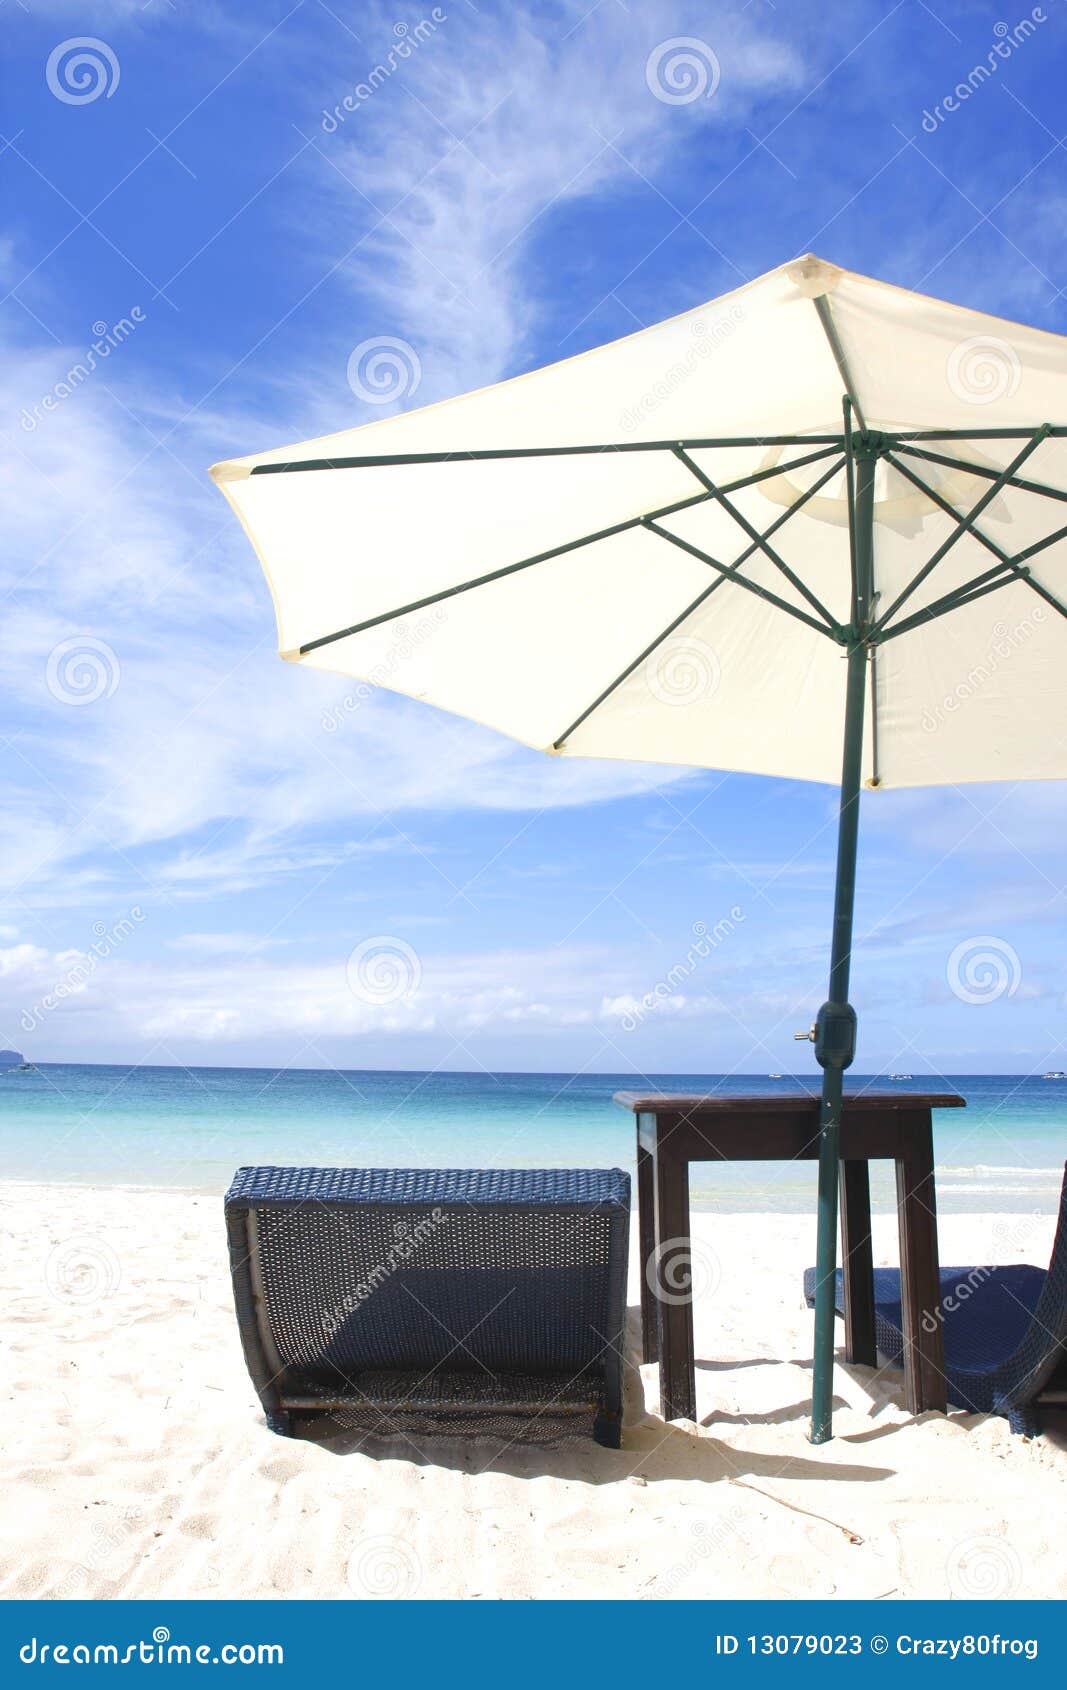 厂家热卖48柱不锈钢中柱伞户外太阳伞沙滩伞遮阳圆形中柱伞-阿里巴巴